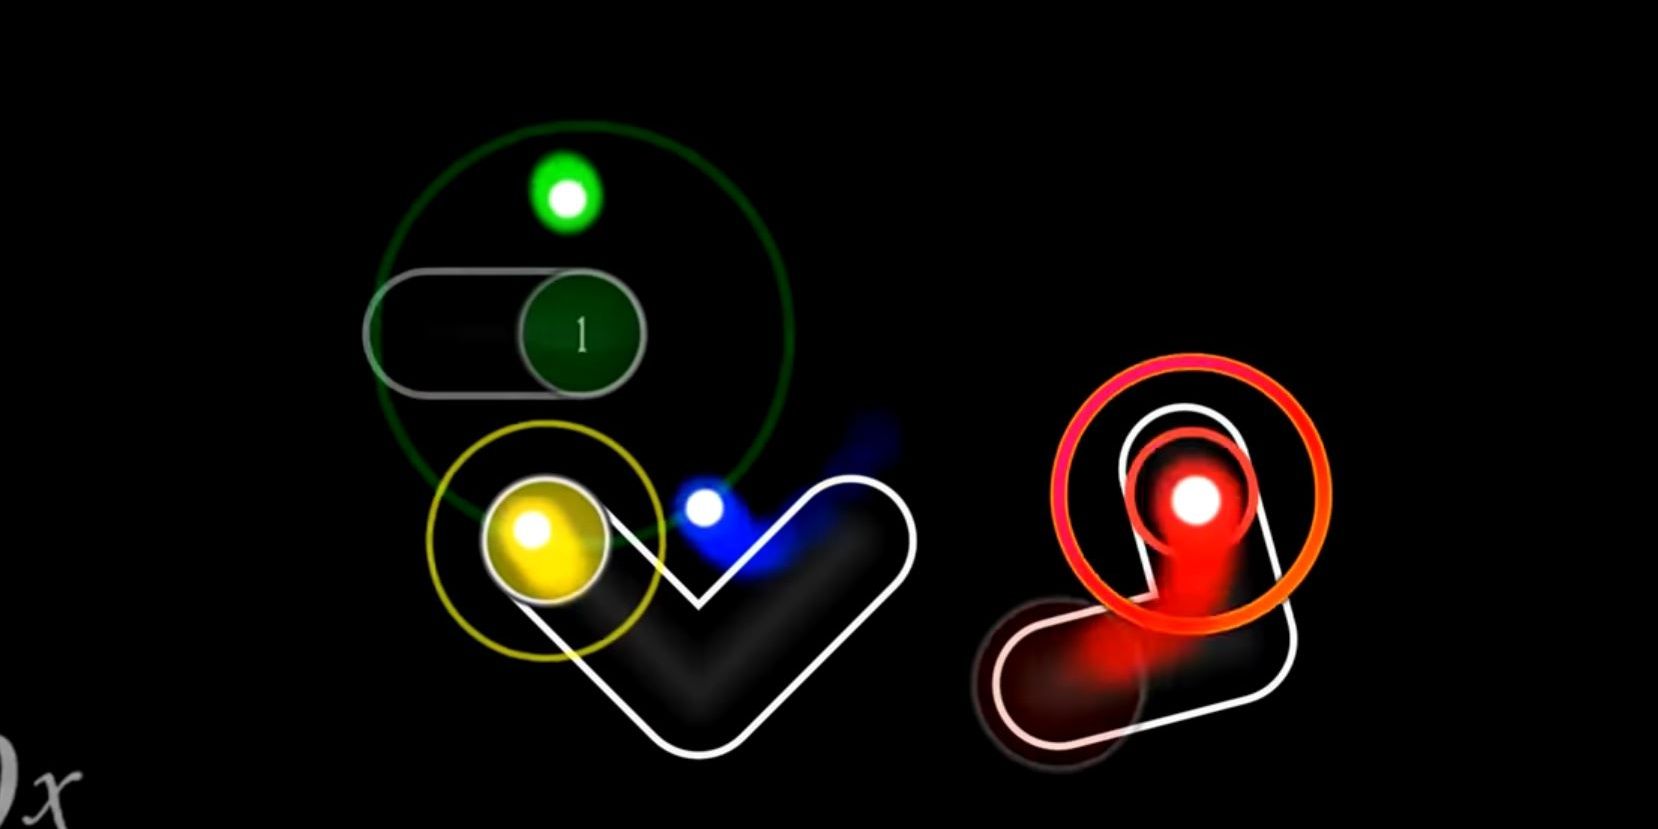 Osu!  Marque nós cooperativos vermelhos, verdes, azuis e amarelos para 4 jogadores na tela